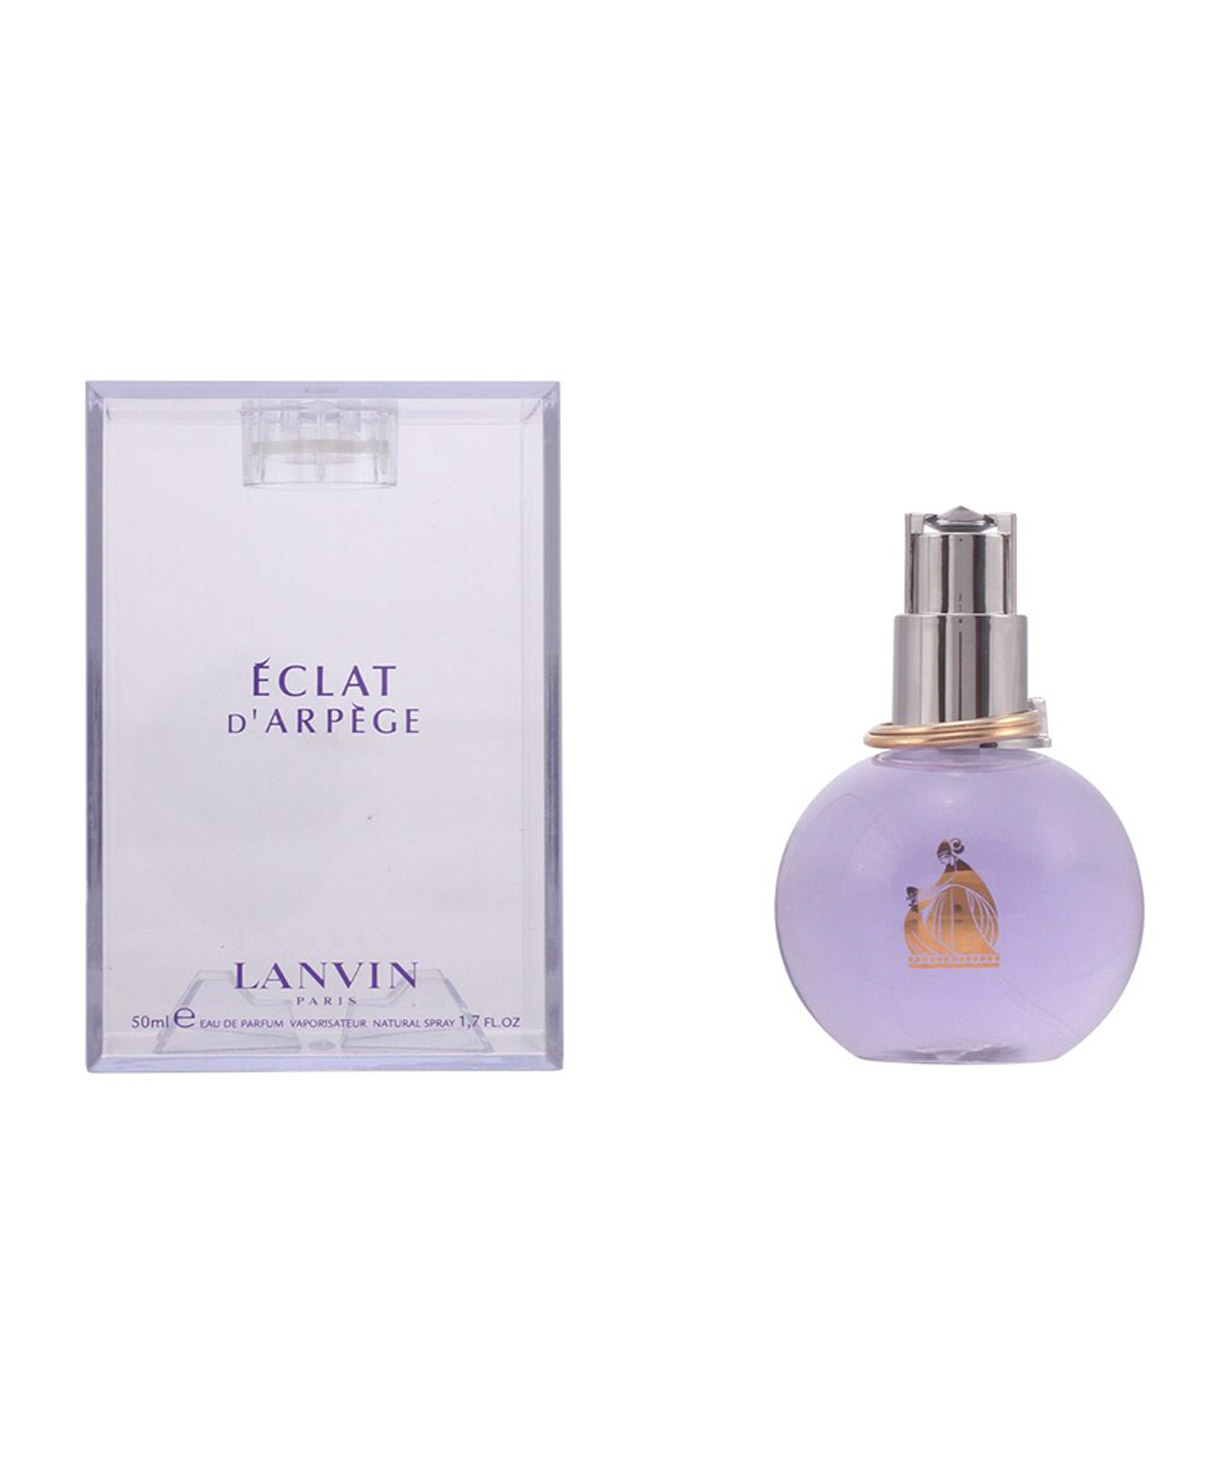 Օծանելիք «Lanvin eclat» eau de parfum կանացի